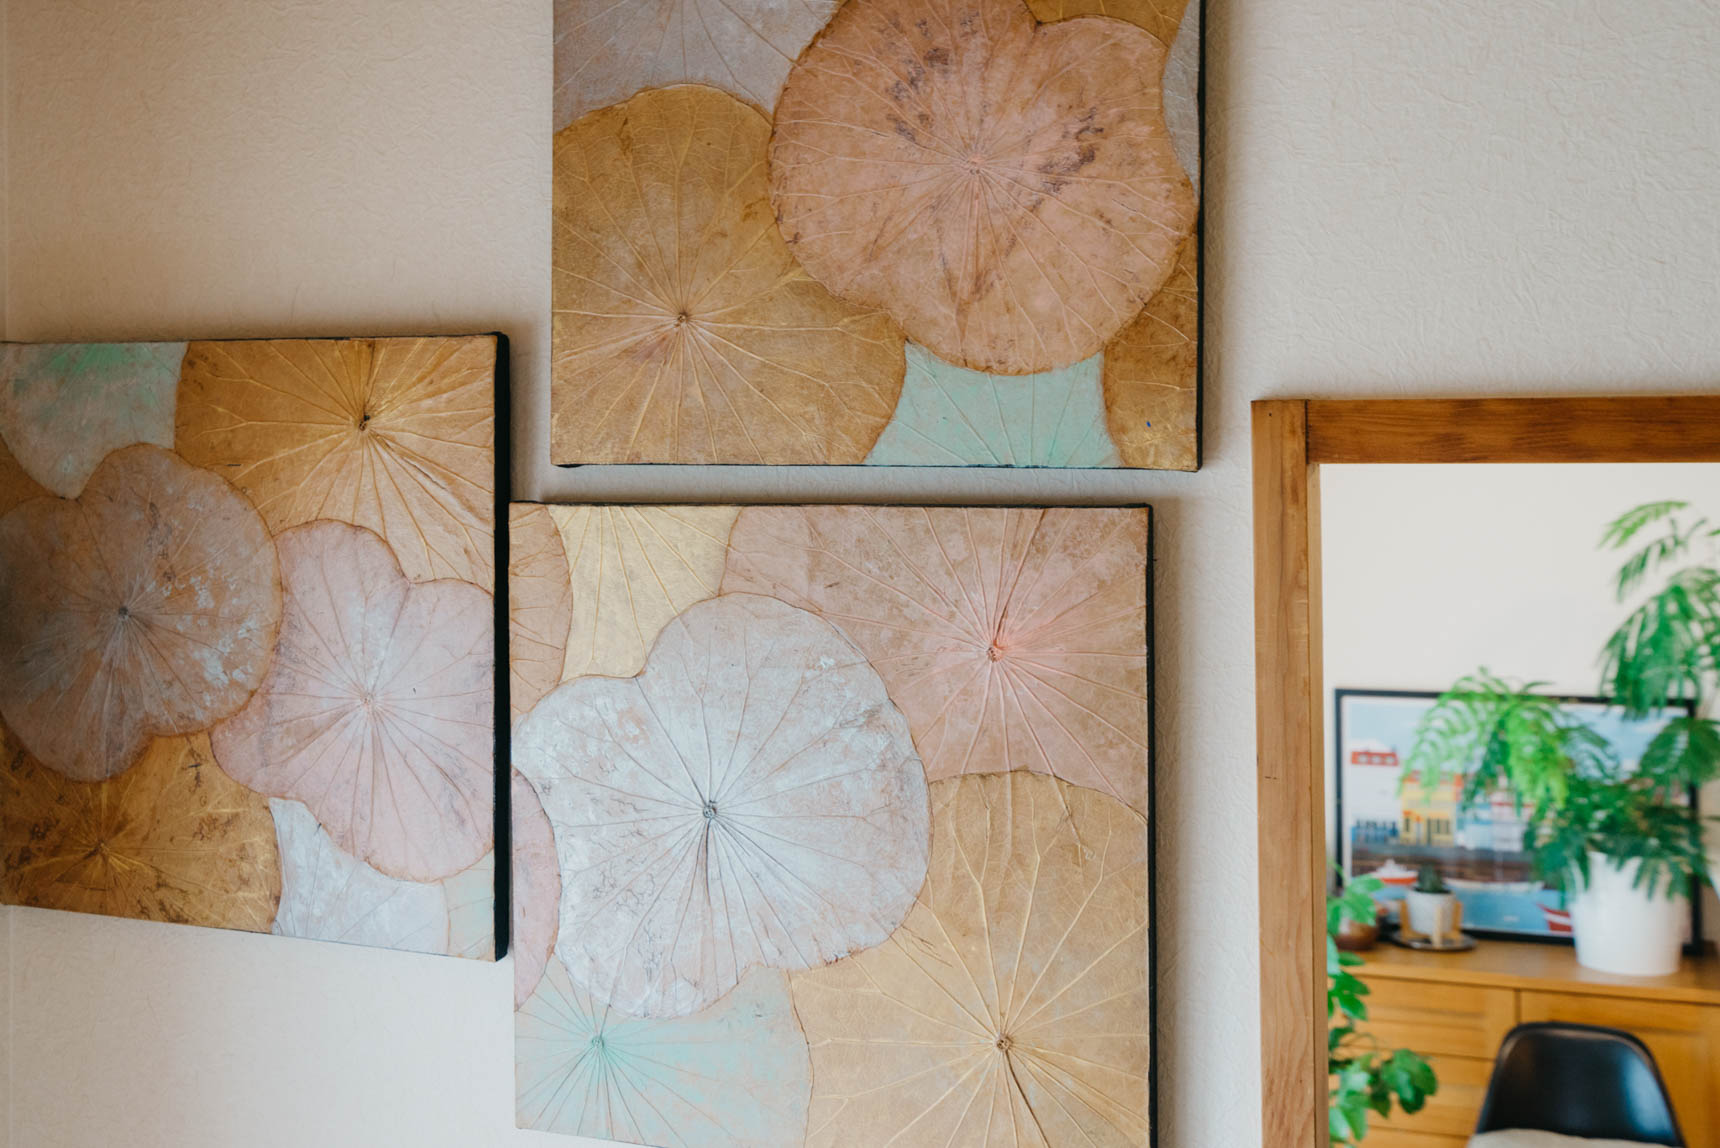 アートもたくさん飾られているdongurinokoさんのお部屋。こちらはハスの葉を使ってつくるワークショップで製作されたもの。